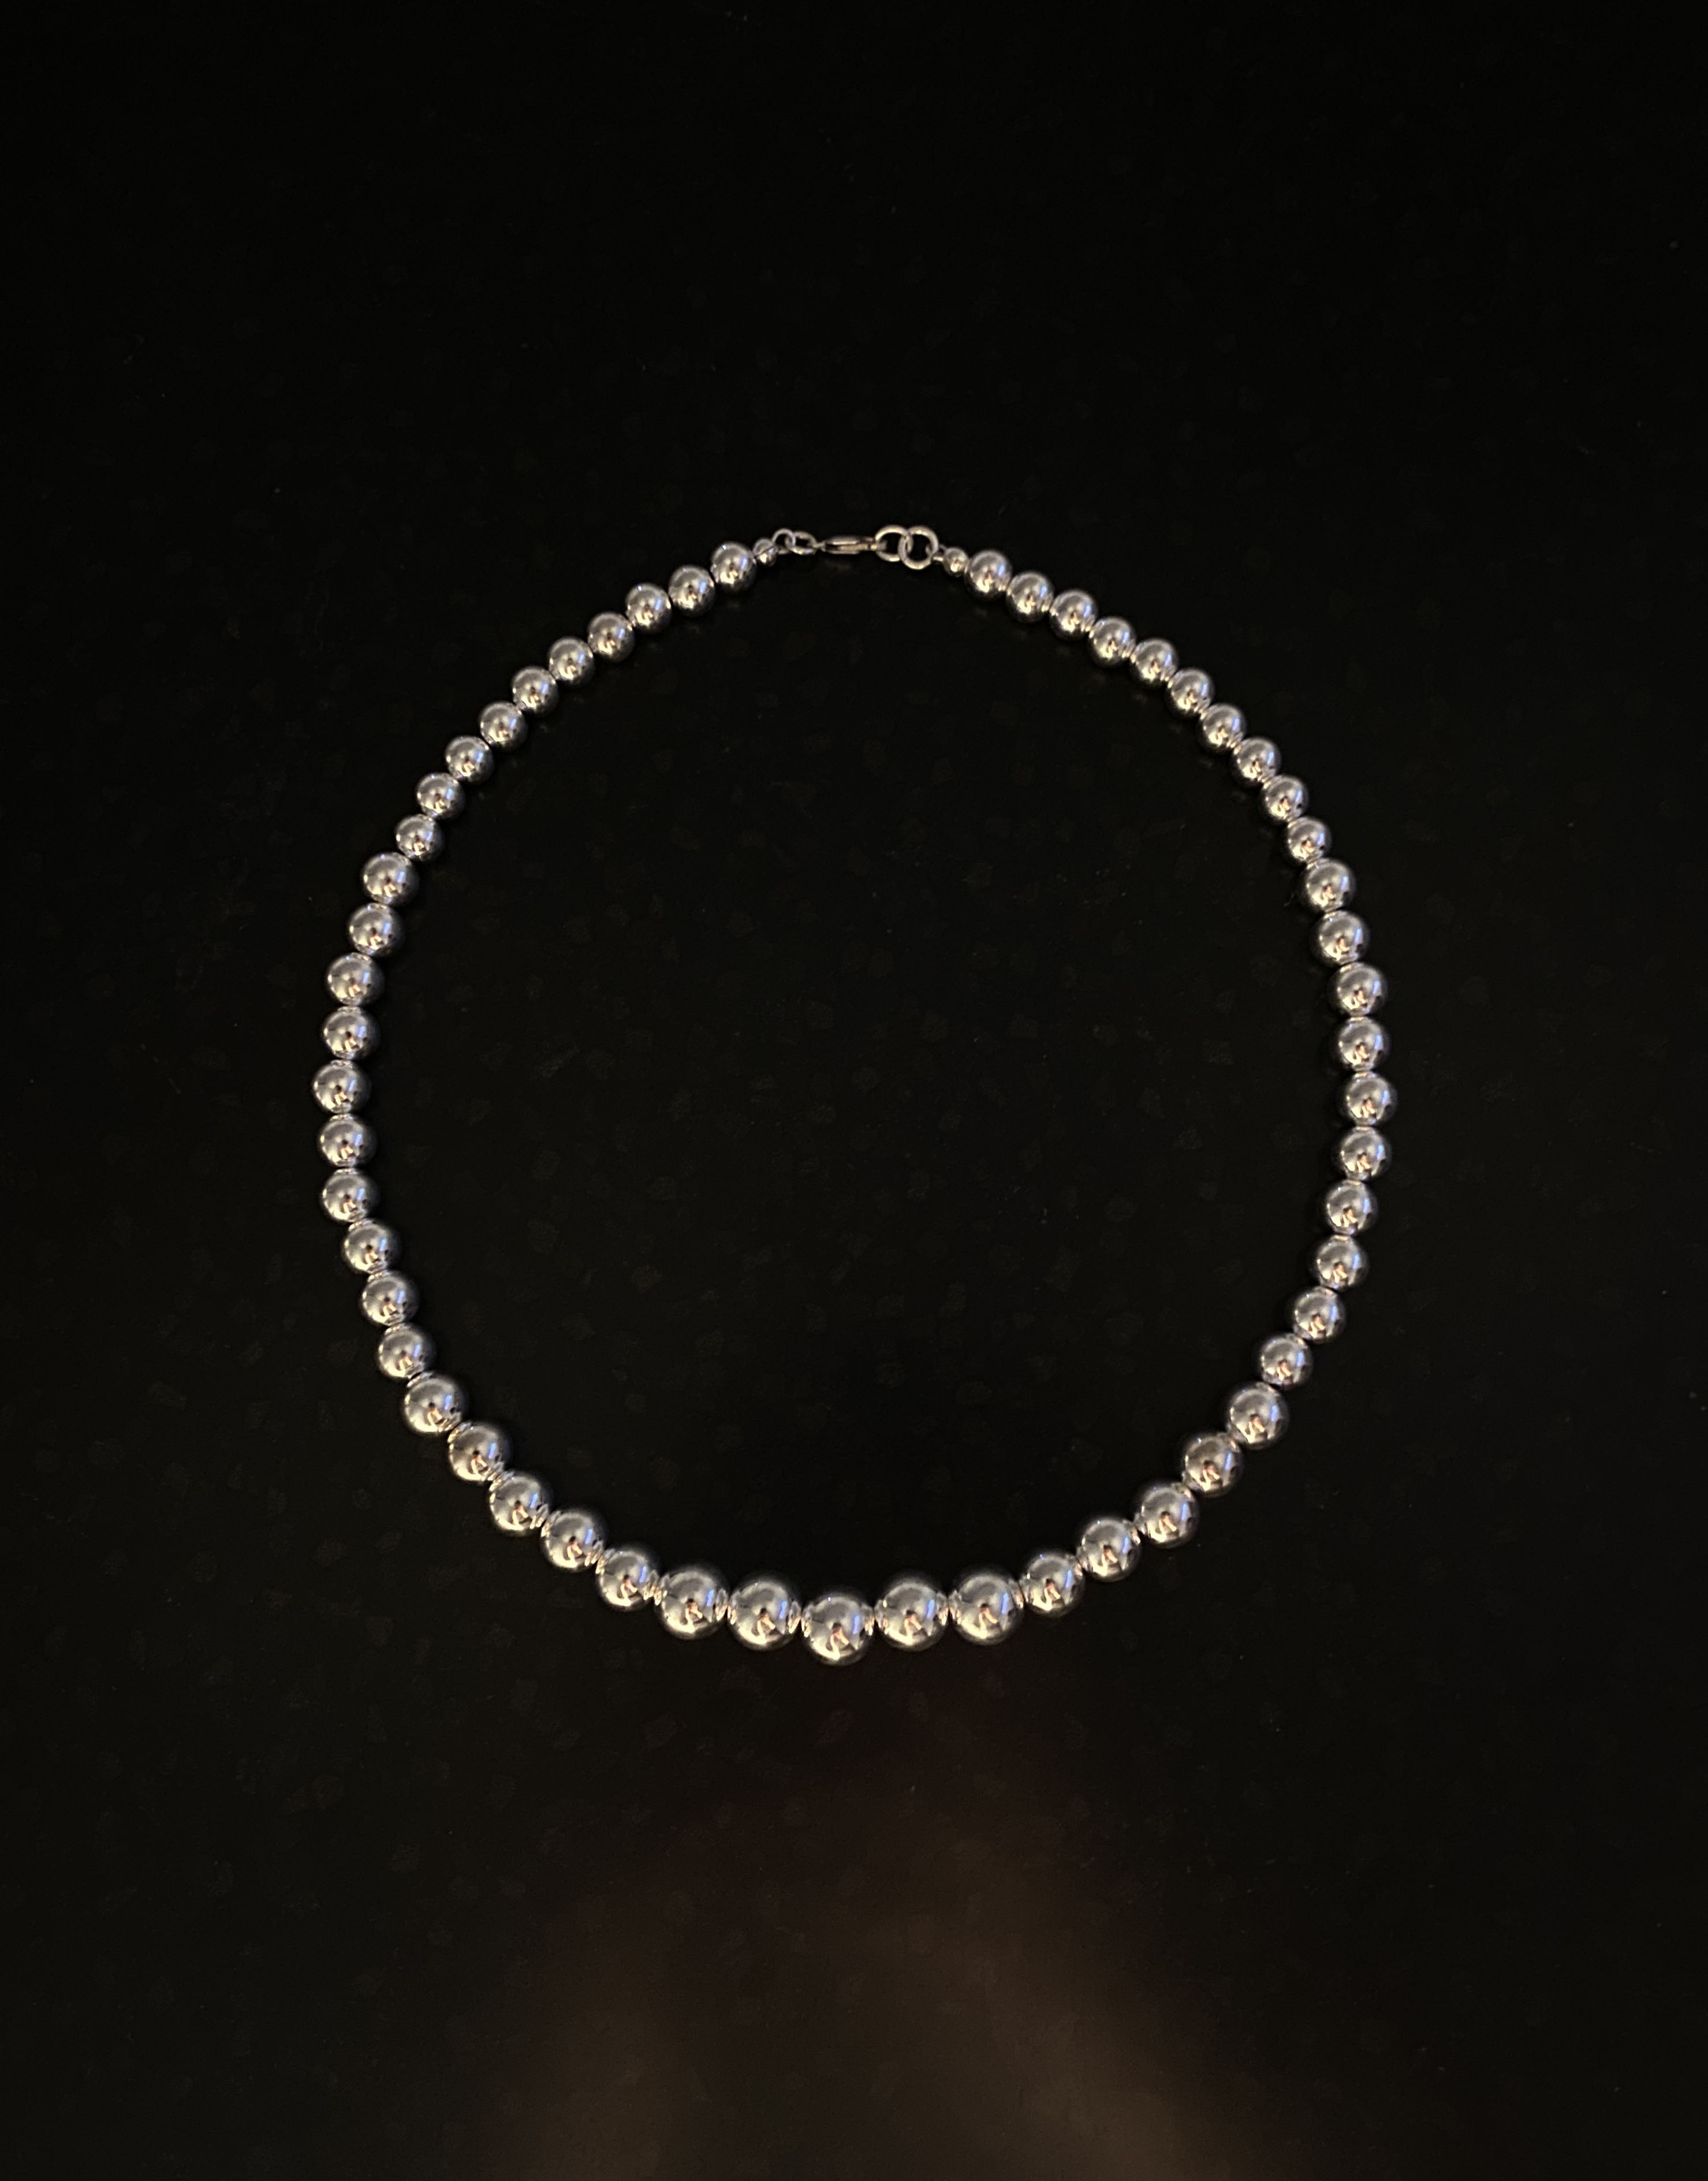 Silverball drop necklace